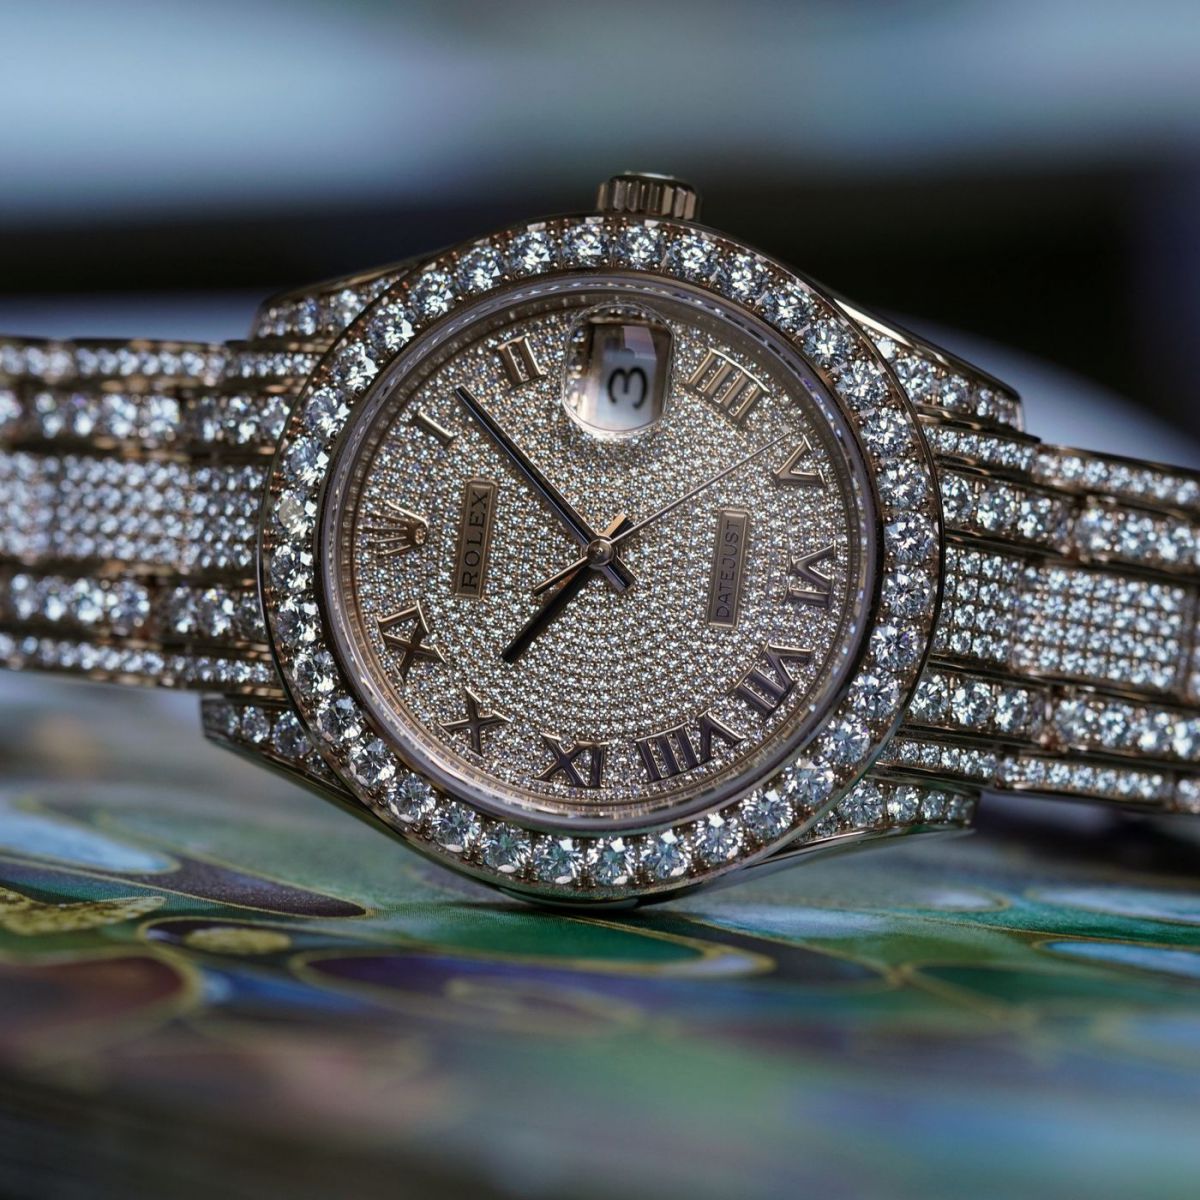 Đồng hồ Rolex giá rẻ nhưng không mất đi giá trị cốt lõi